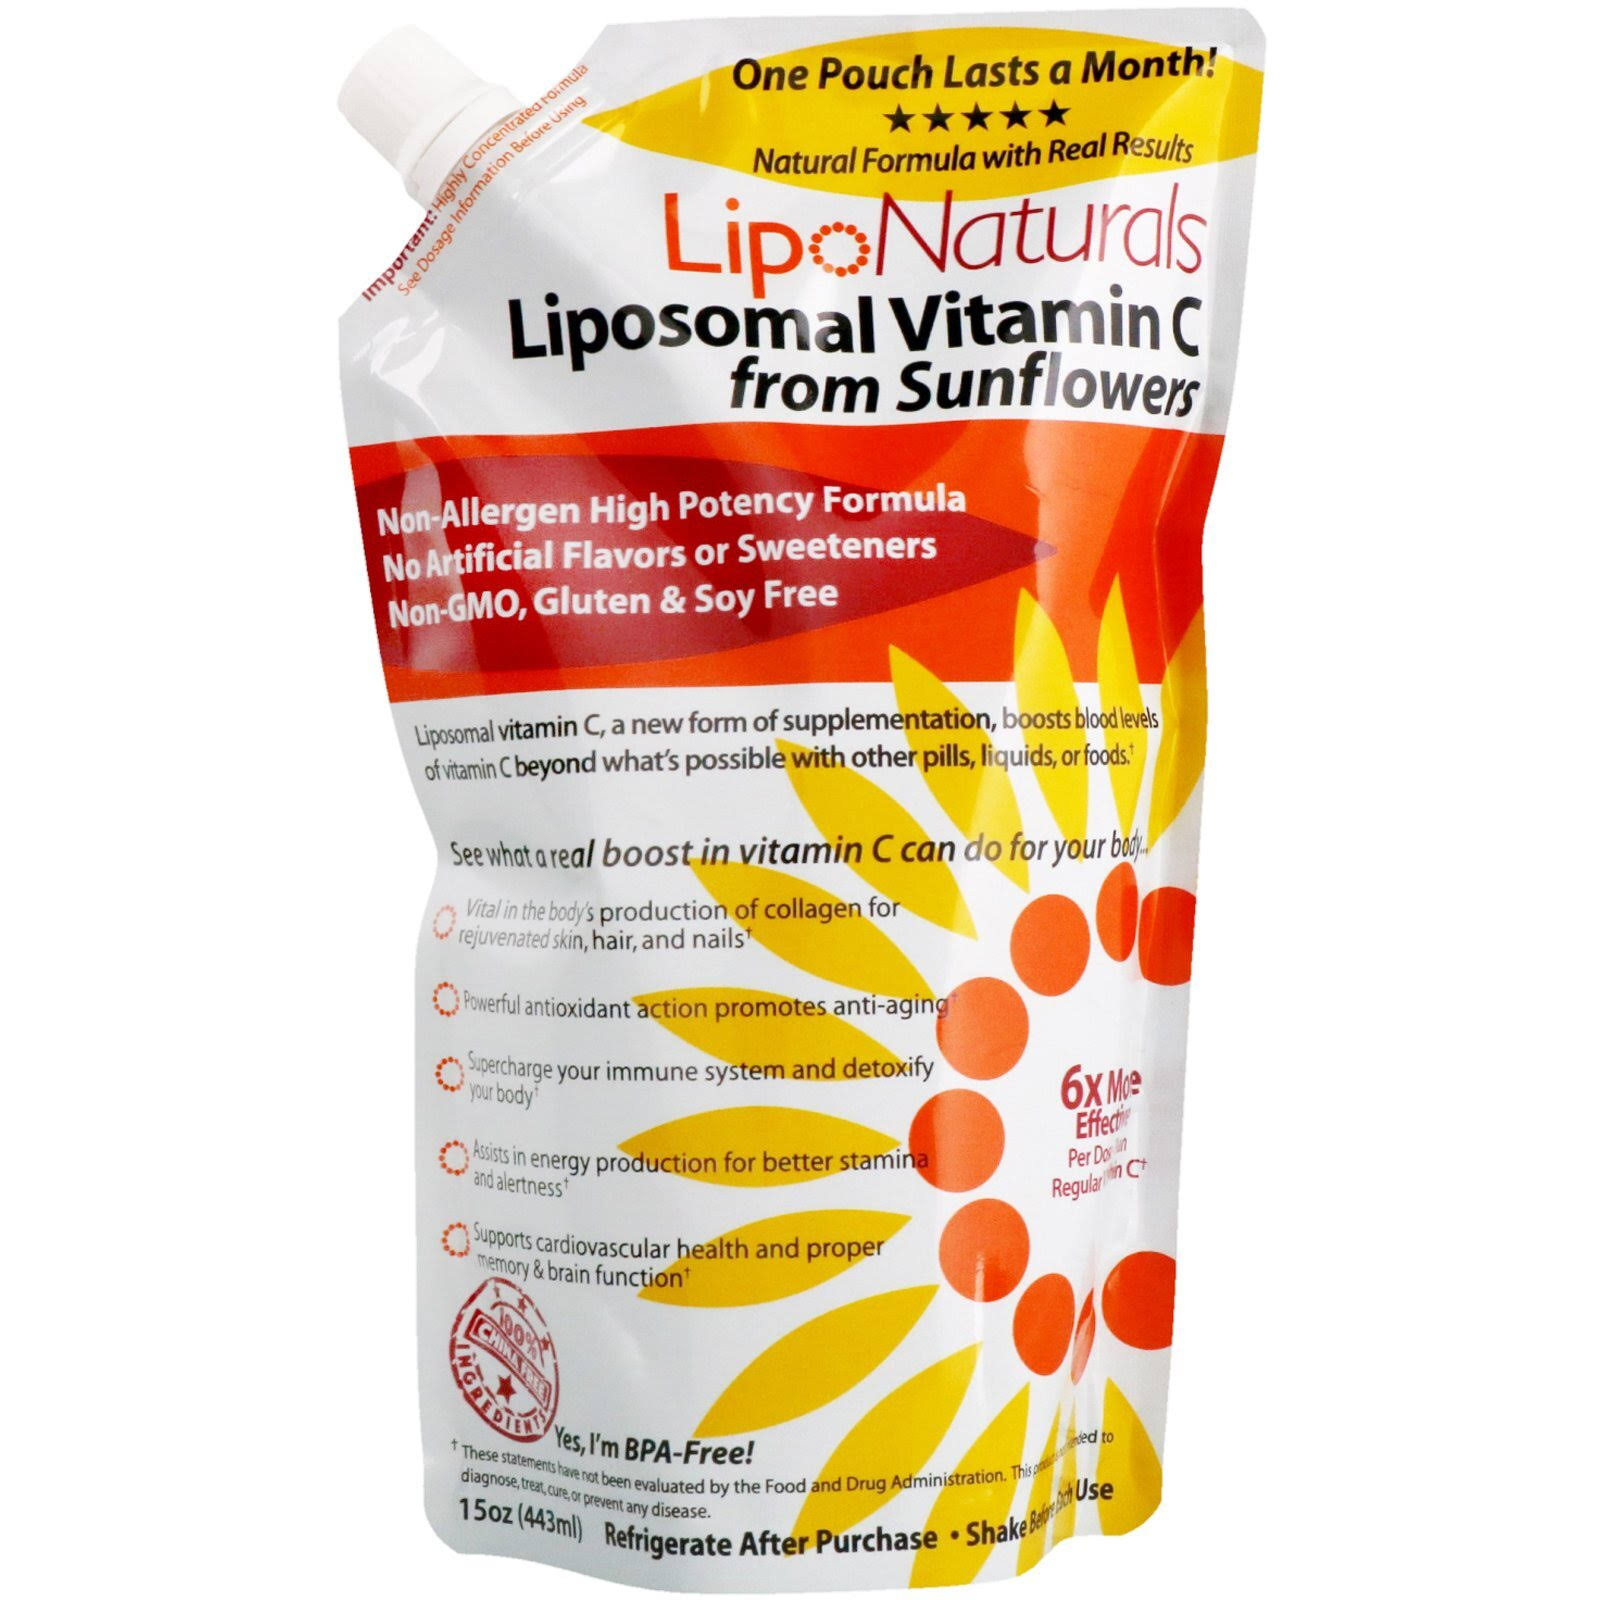 Lipo Naturals Liposomal Vitamin C - 15oz